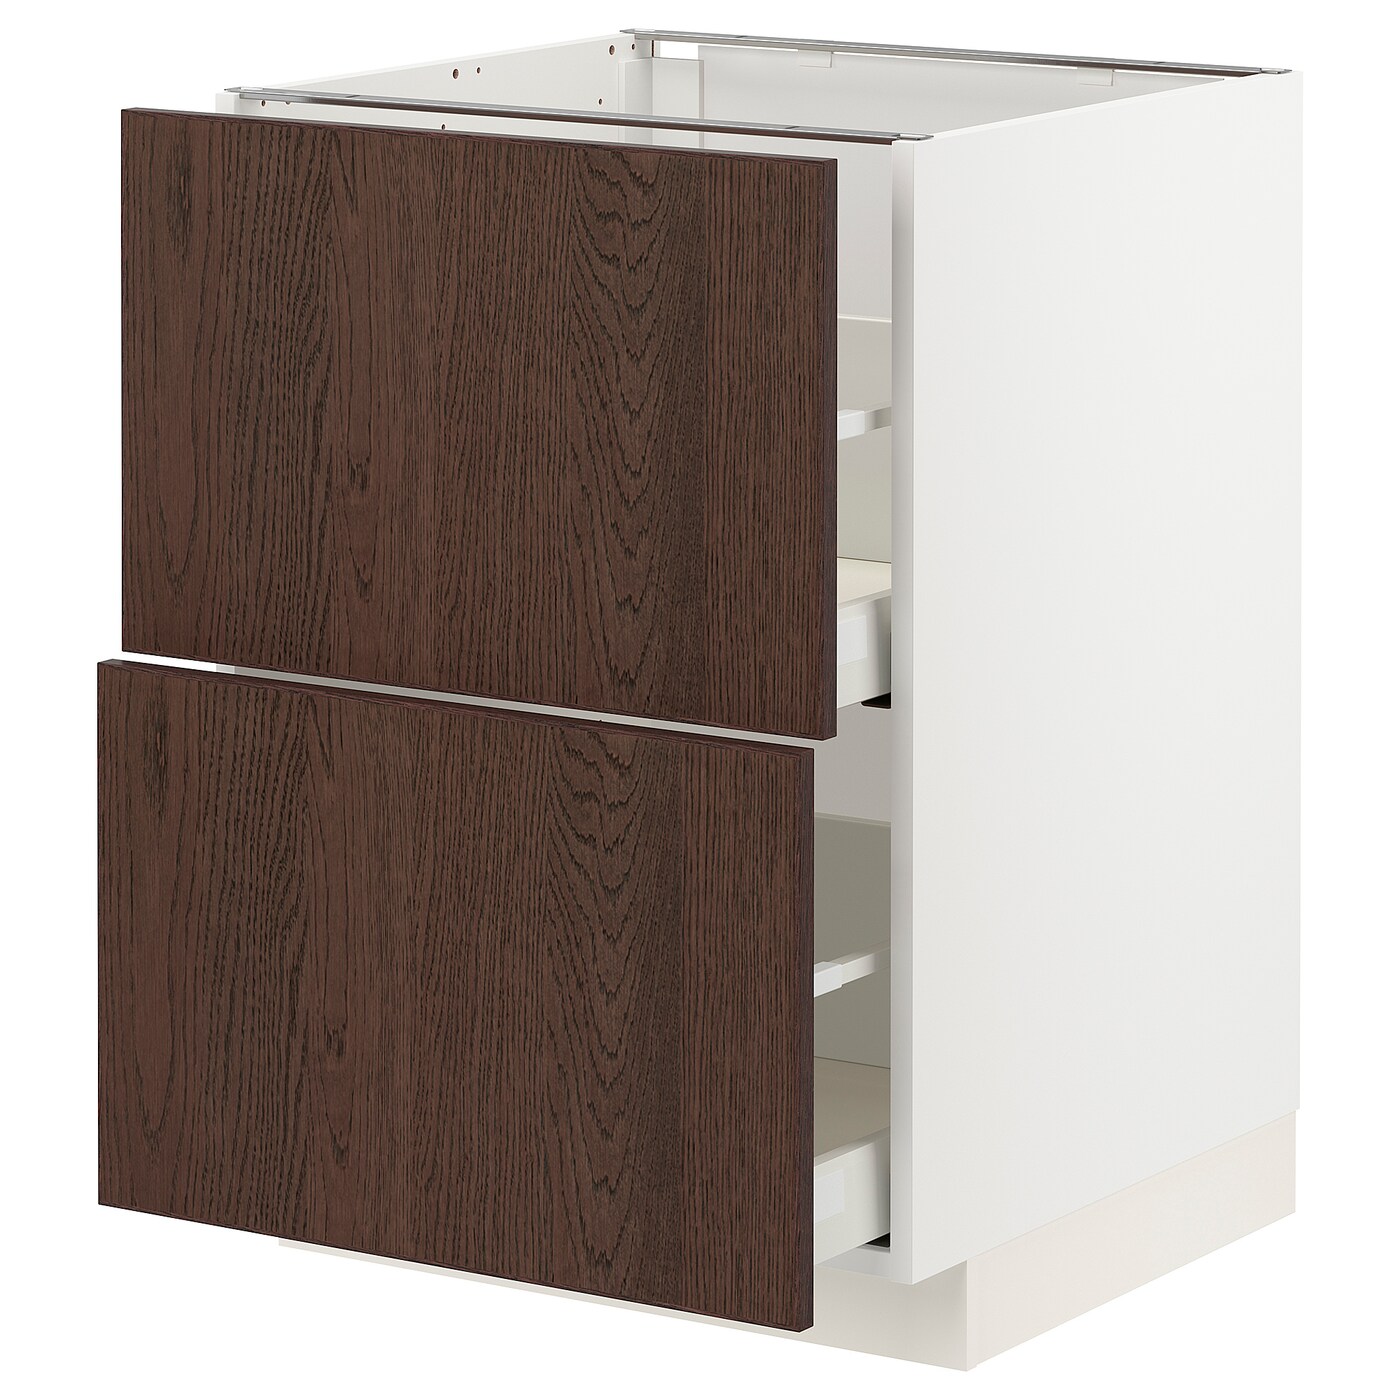 Напольный шкаф  - IKEA METOD MAXIMERA, 88x61,6x60см, белый/коричневый, МЕТОД МАКСИМЕРА ИКЕА